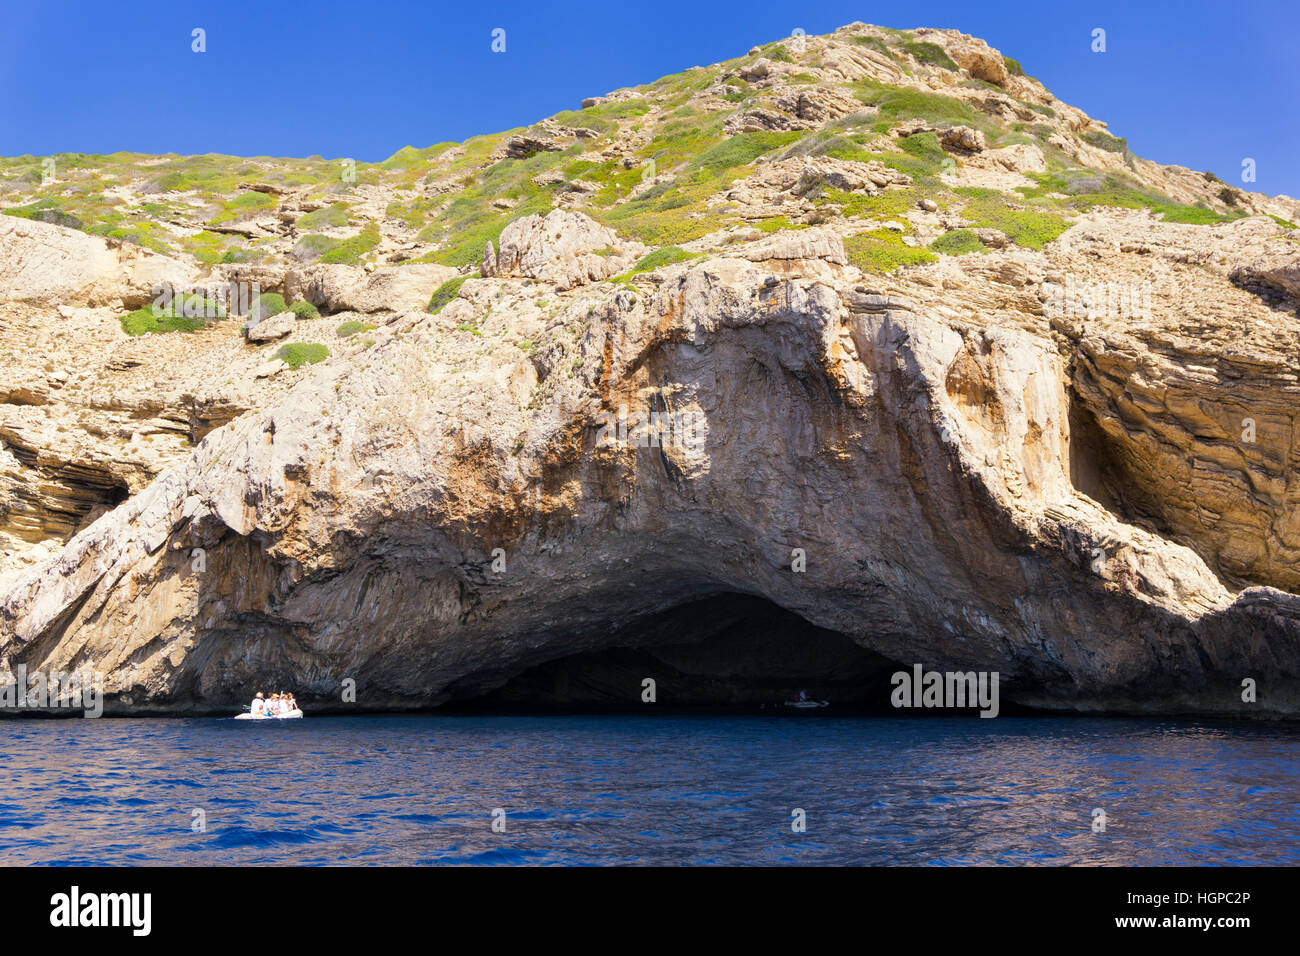 Grotte bleue dans l'île de Cabrera, îles Baléares, Espagne Banque D'Images